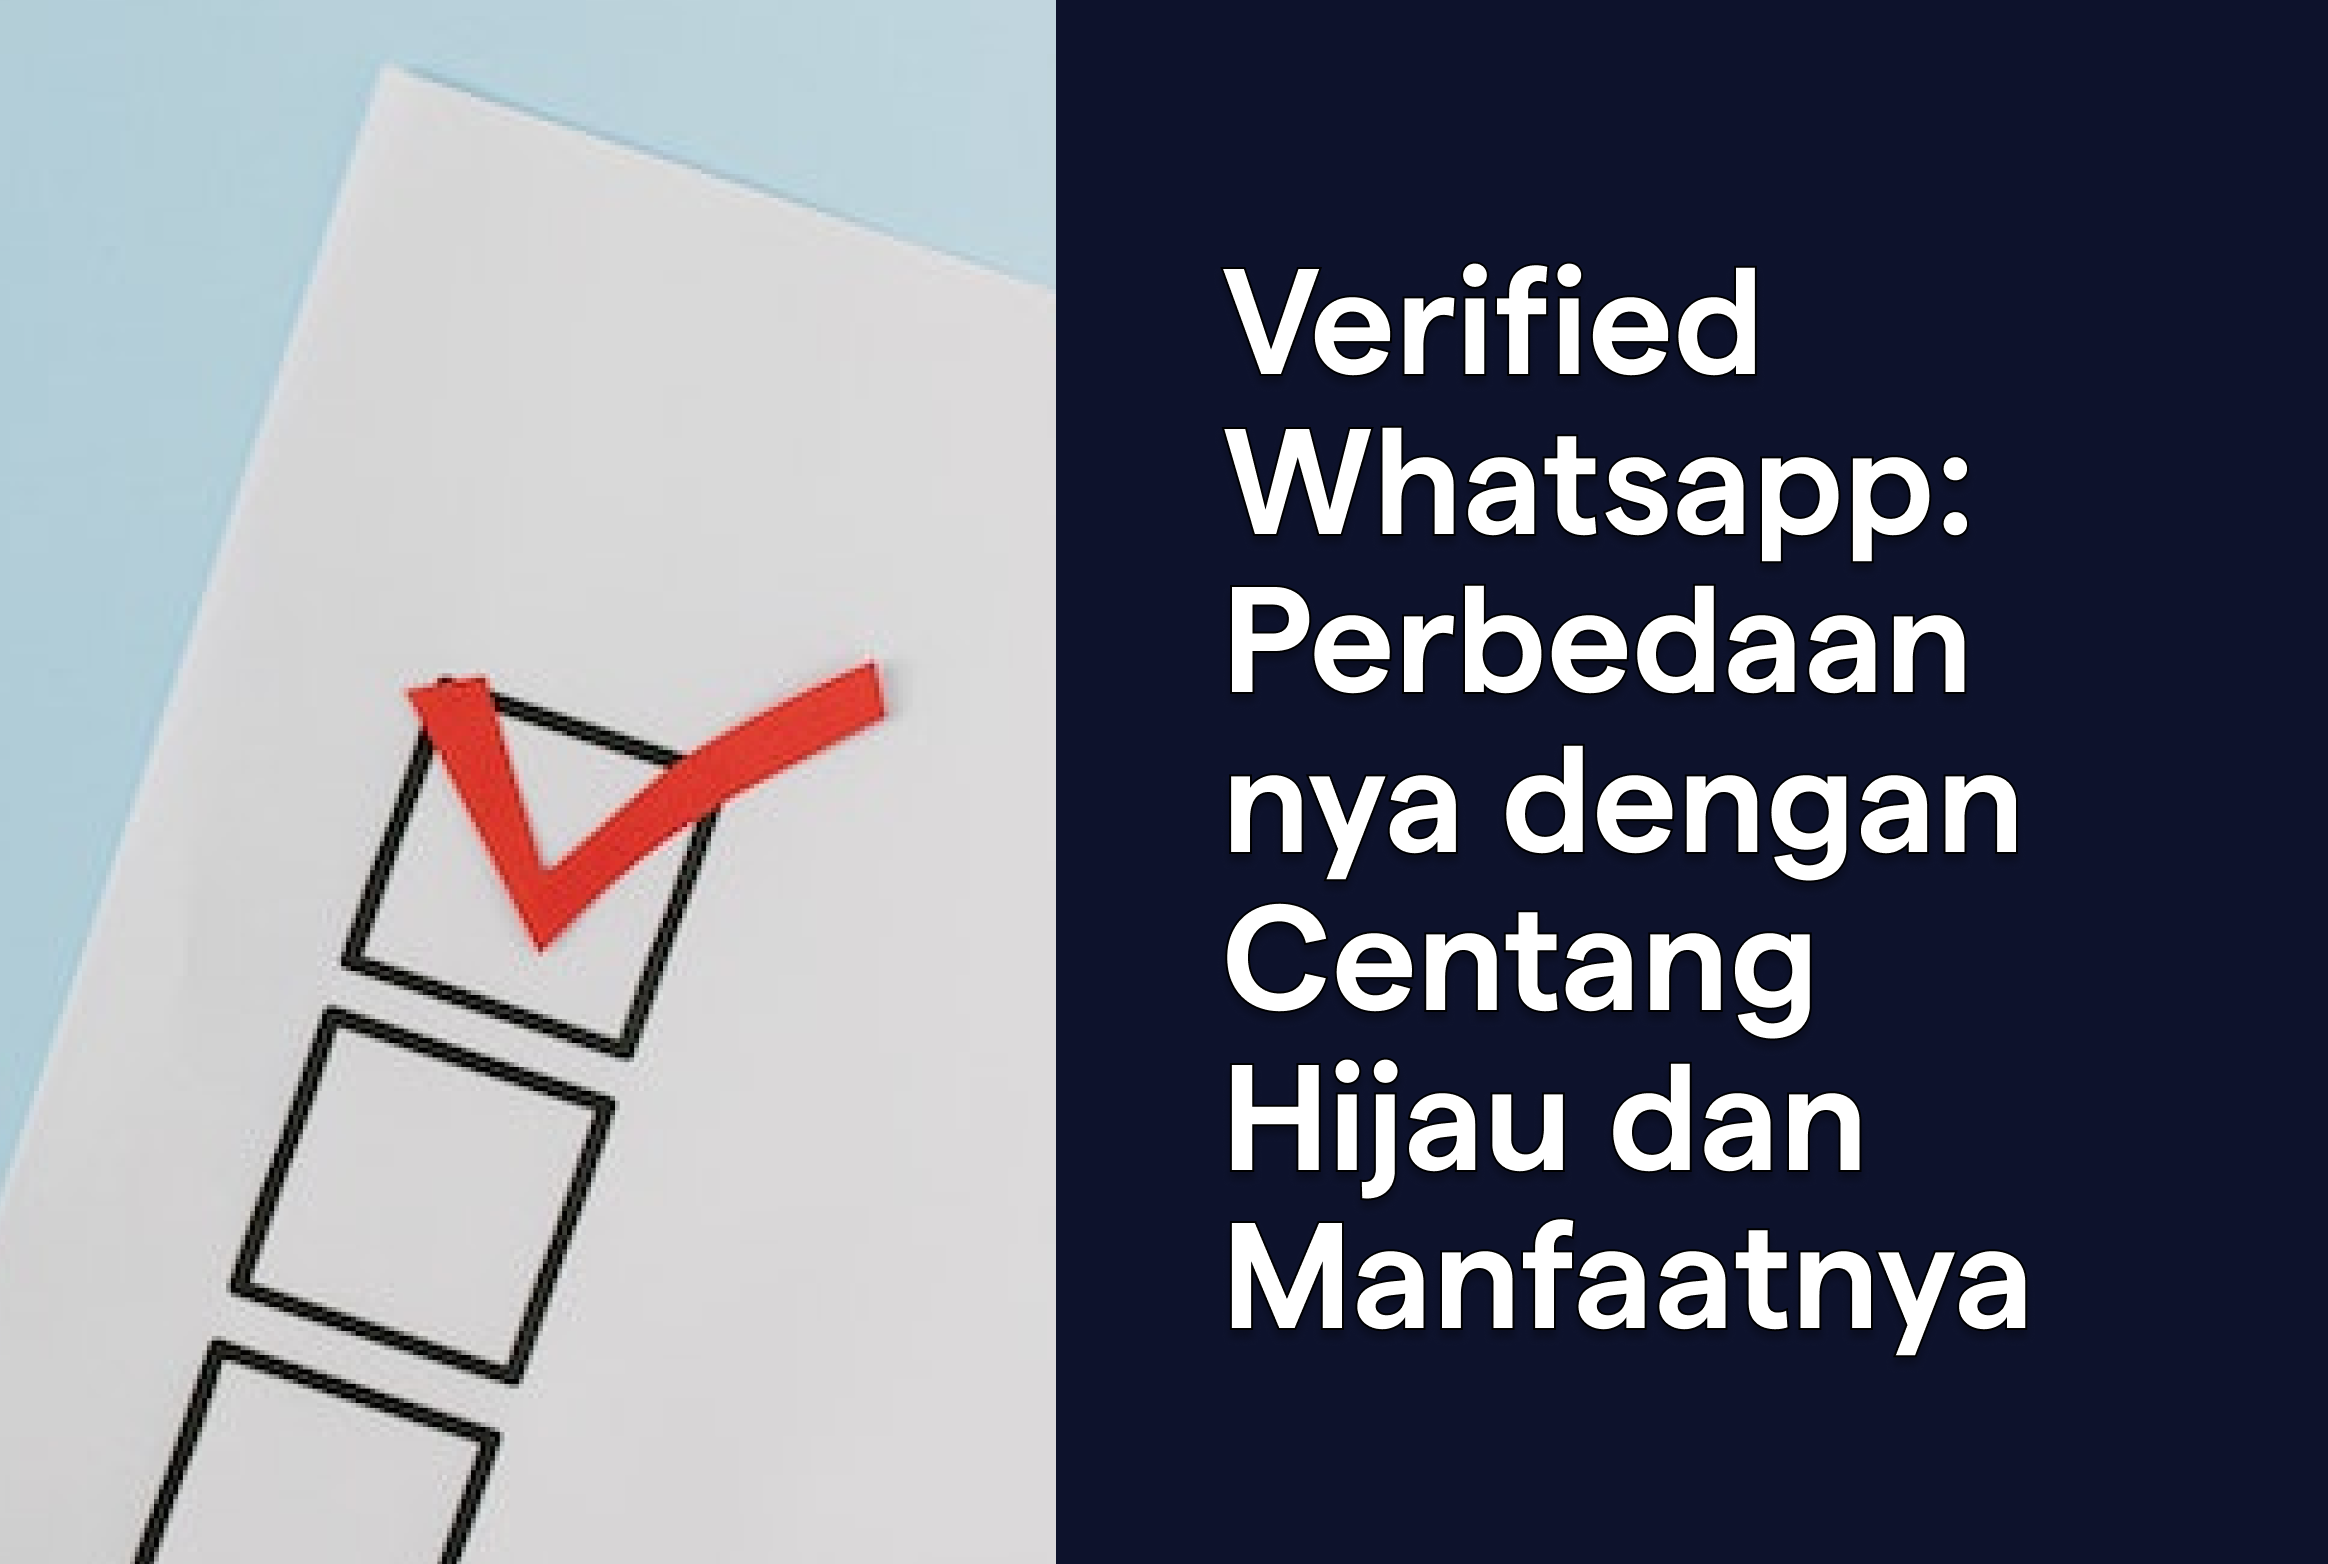 Verified Whatsapp: Perbedaannya dengan Centang Hijau dan Manfaatnya